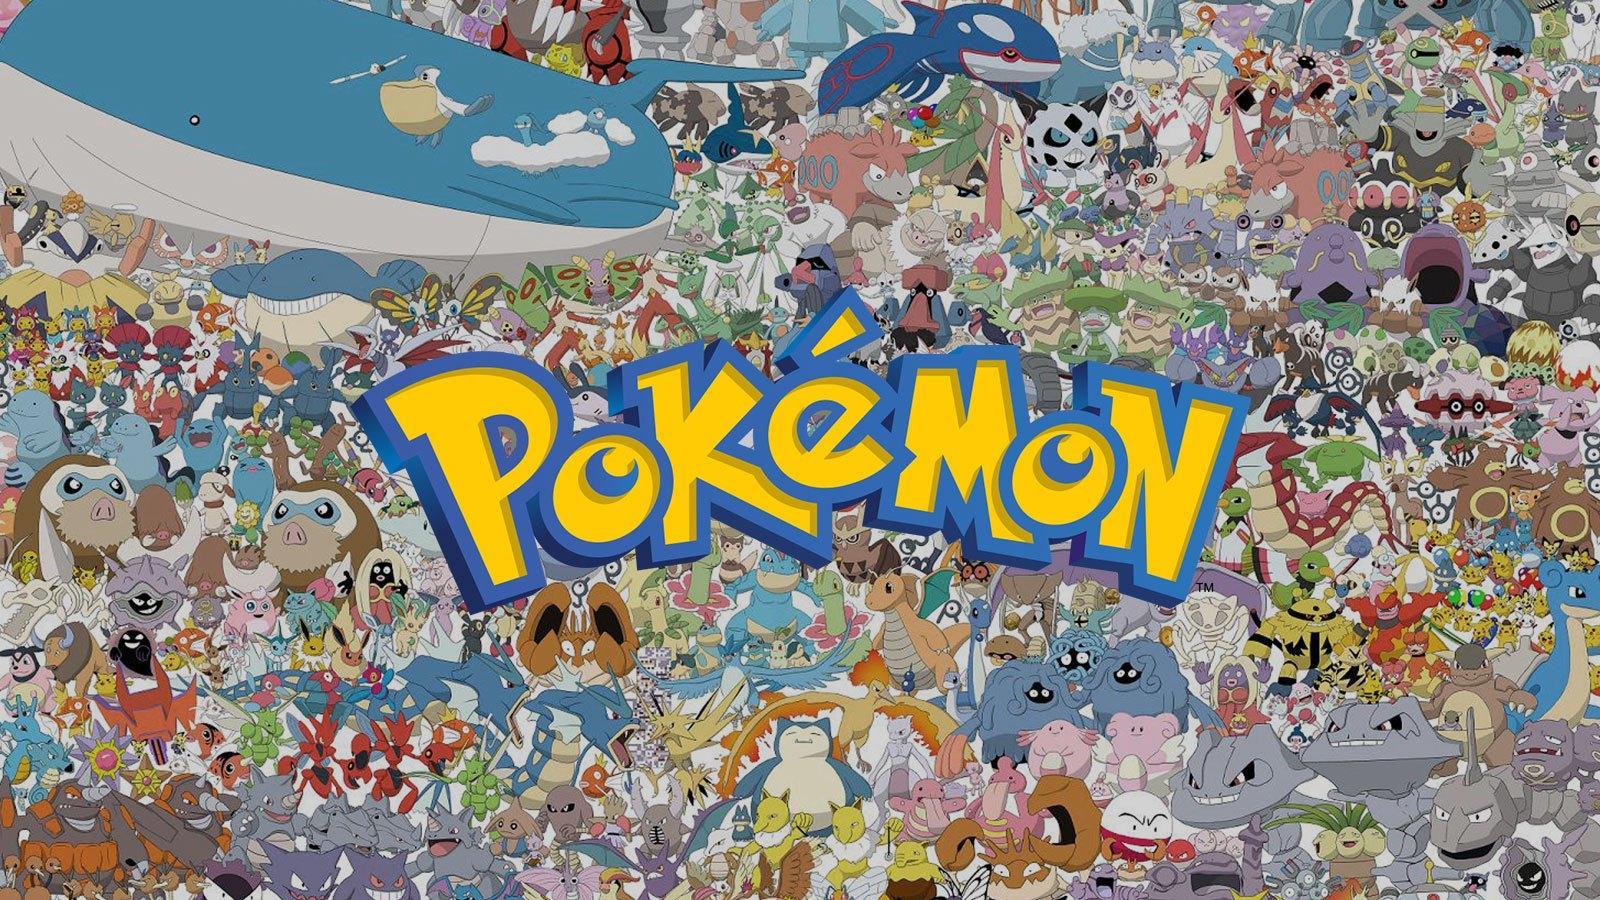 Cet artiste a passé 6 ans à faire ce dessin regroupant 1 781 Pokémon 